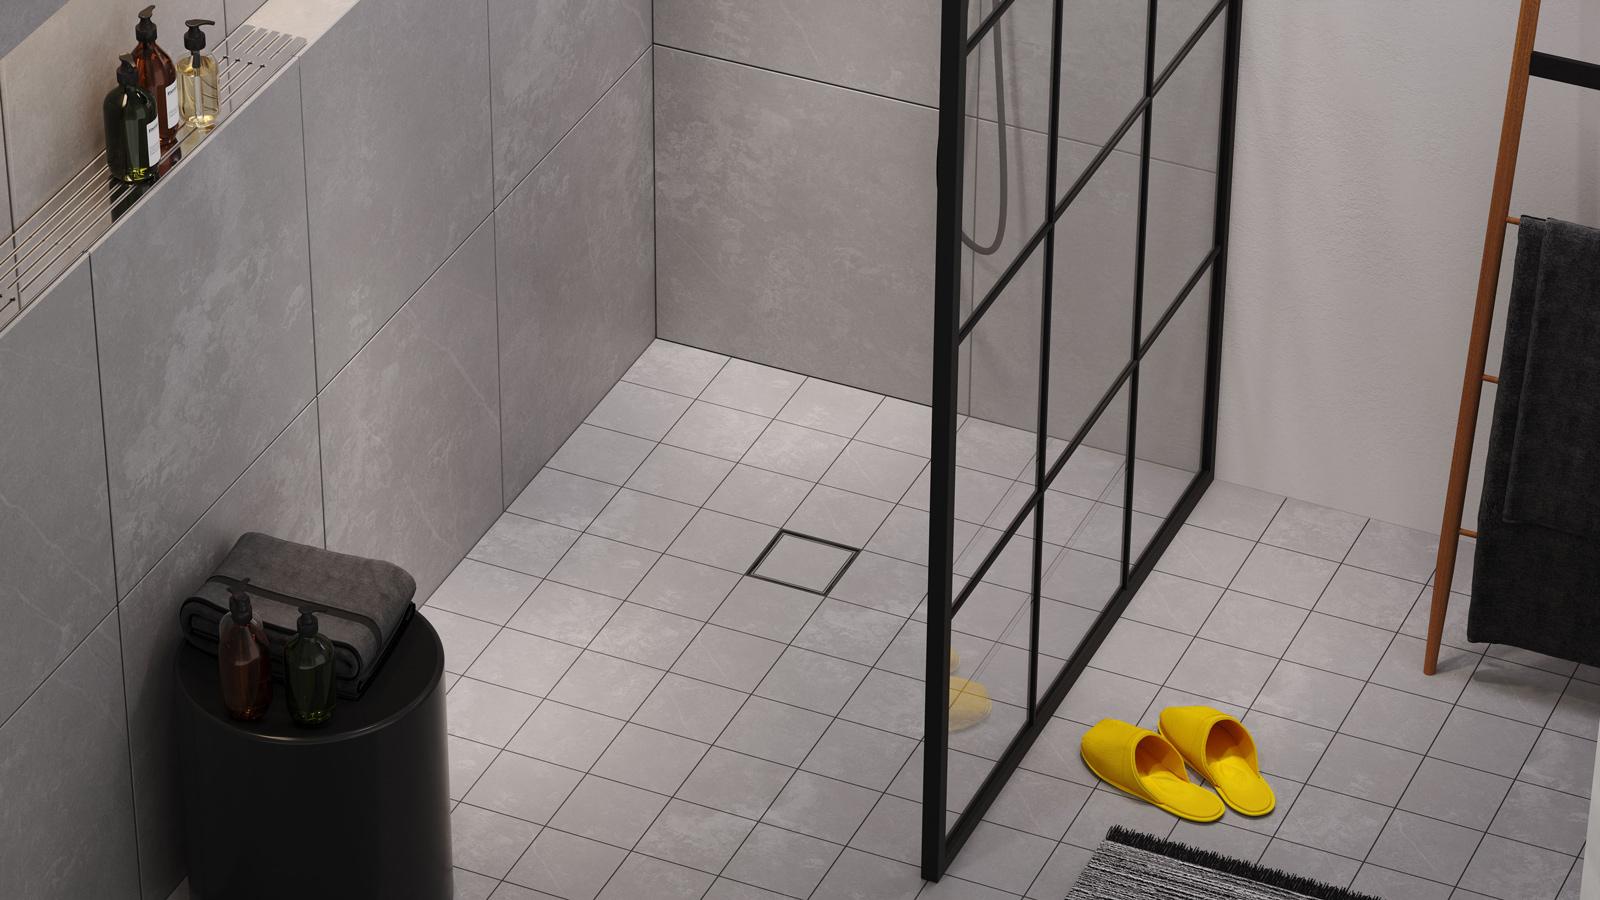 Laatoitettu Vieser Flip voi olla lähes huomaamaton osa kylpyhuoneen lattiaa.